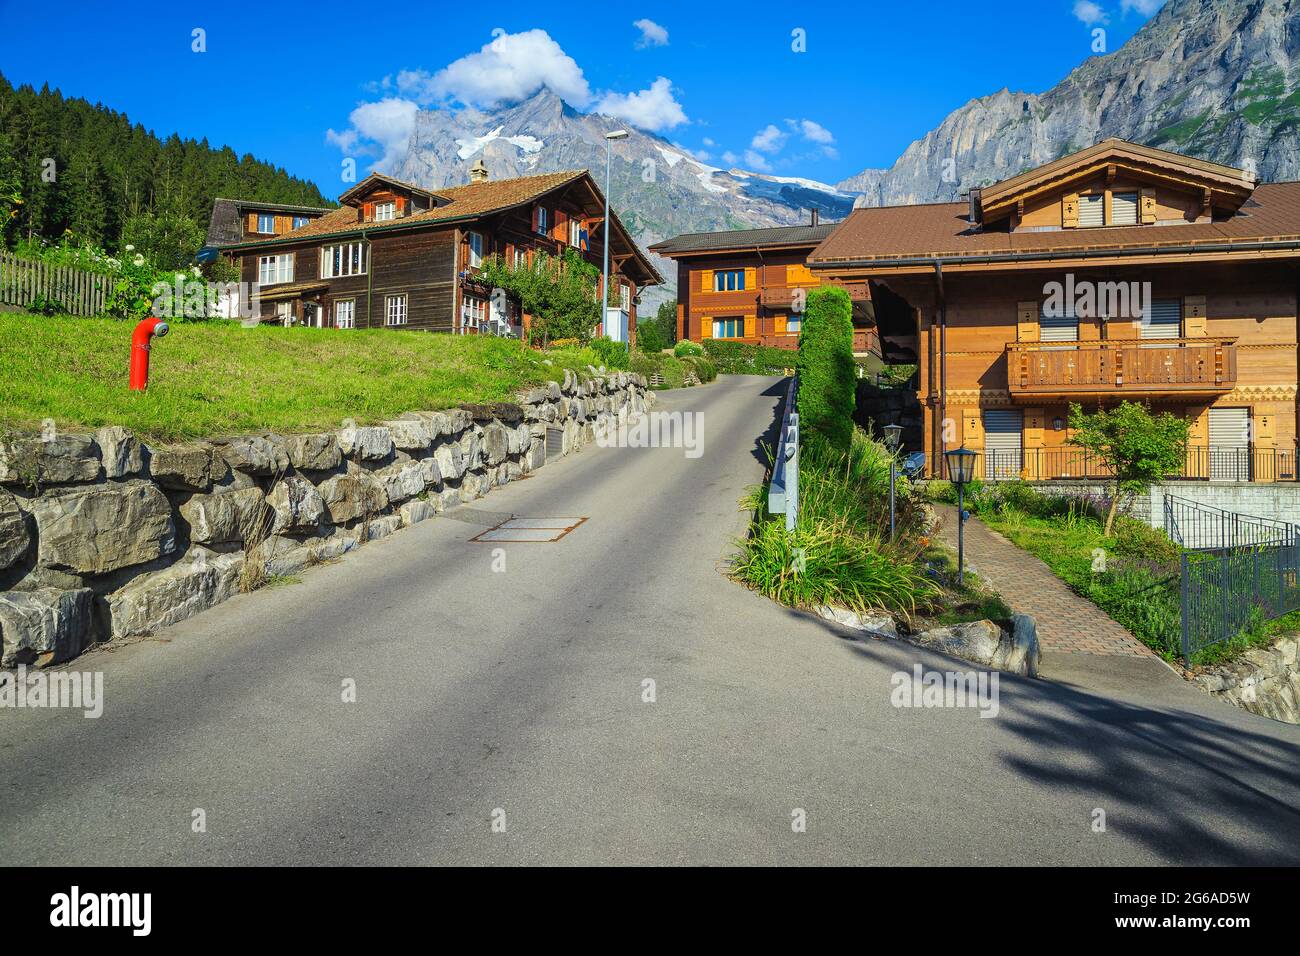 Ammirevole vista sulla strada con case in legno e giardini nel villaggio montano di Grindelwald, Oberland Bernese, Svizzera, Europa Foto Stock